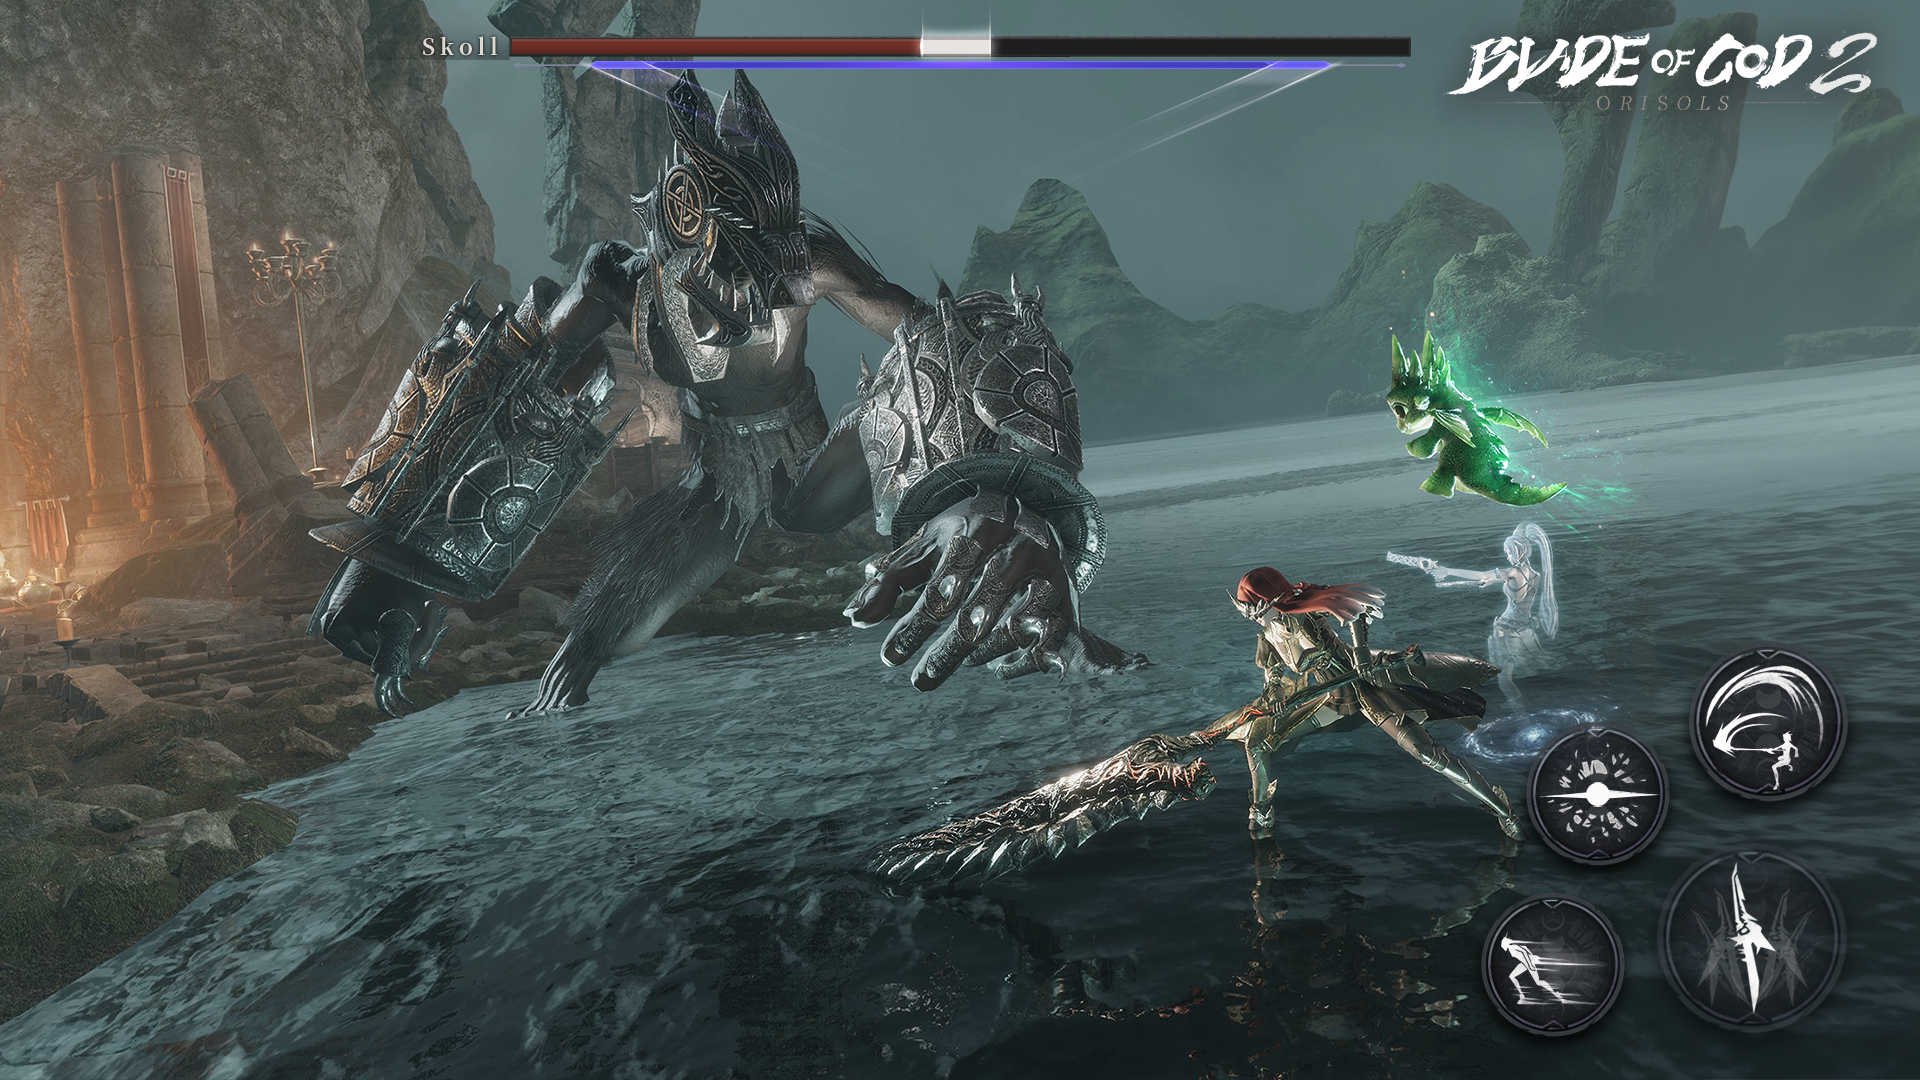 Screenshot of Blade of God II:Orisols